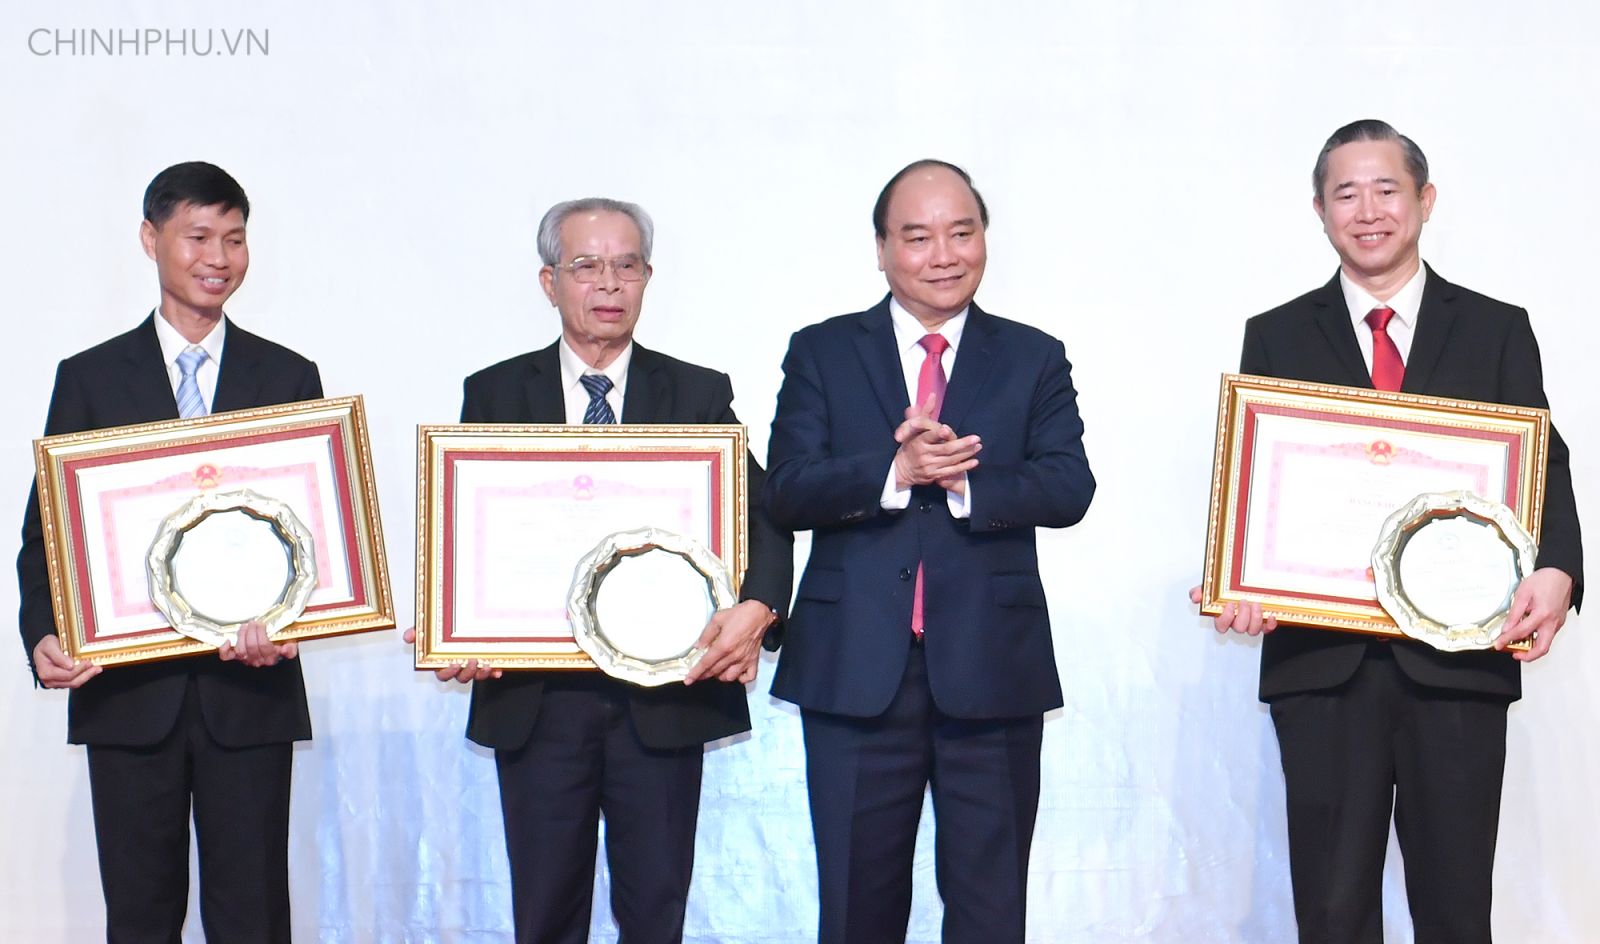 Thủ tướng trao Bằng khen cho các cá nhân có nhiều đống góp trong xây dựng Khu kinh tế mở Chu Lai. Ảnh: VGP/Quang Hiếu